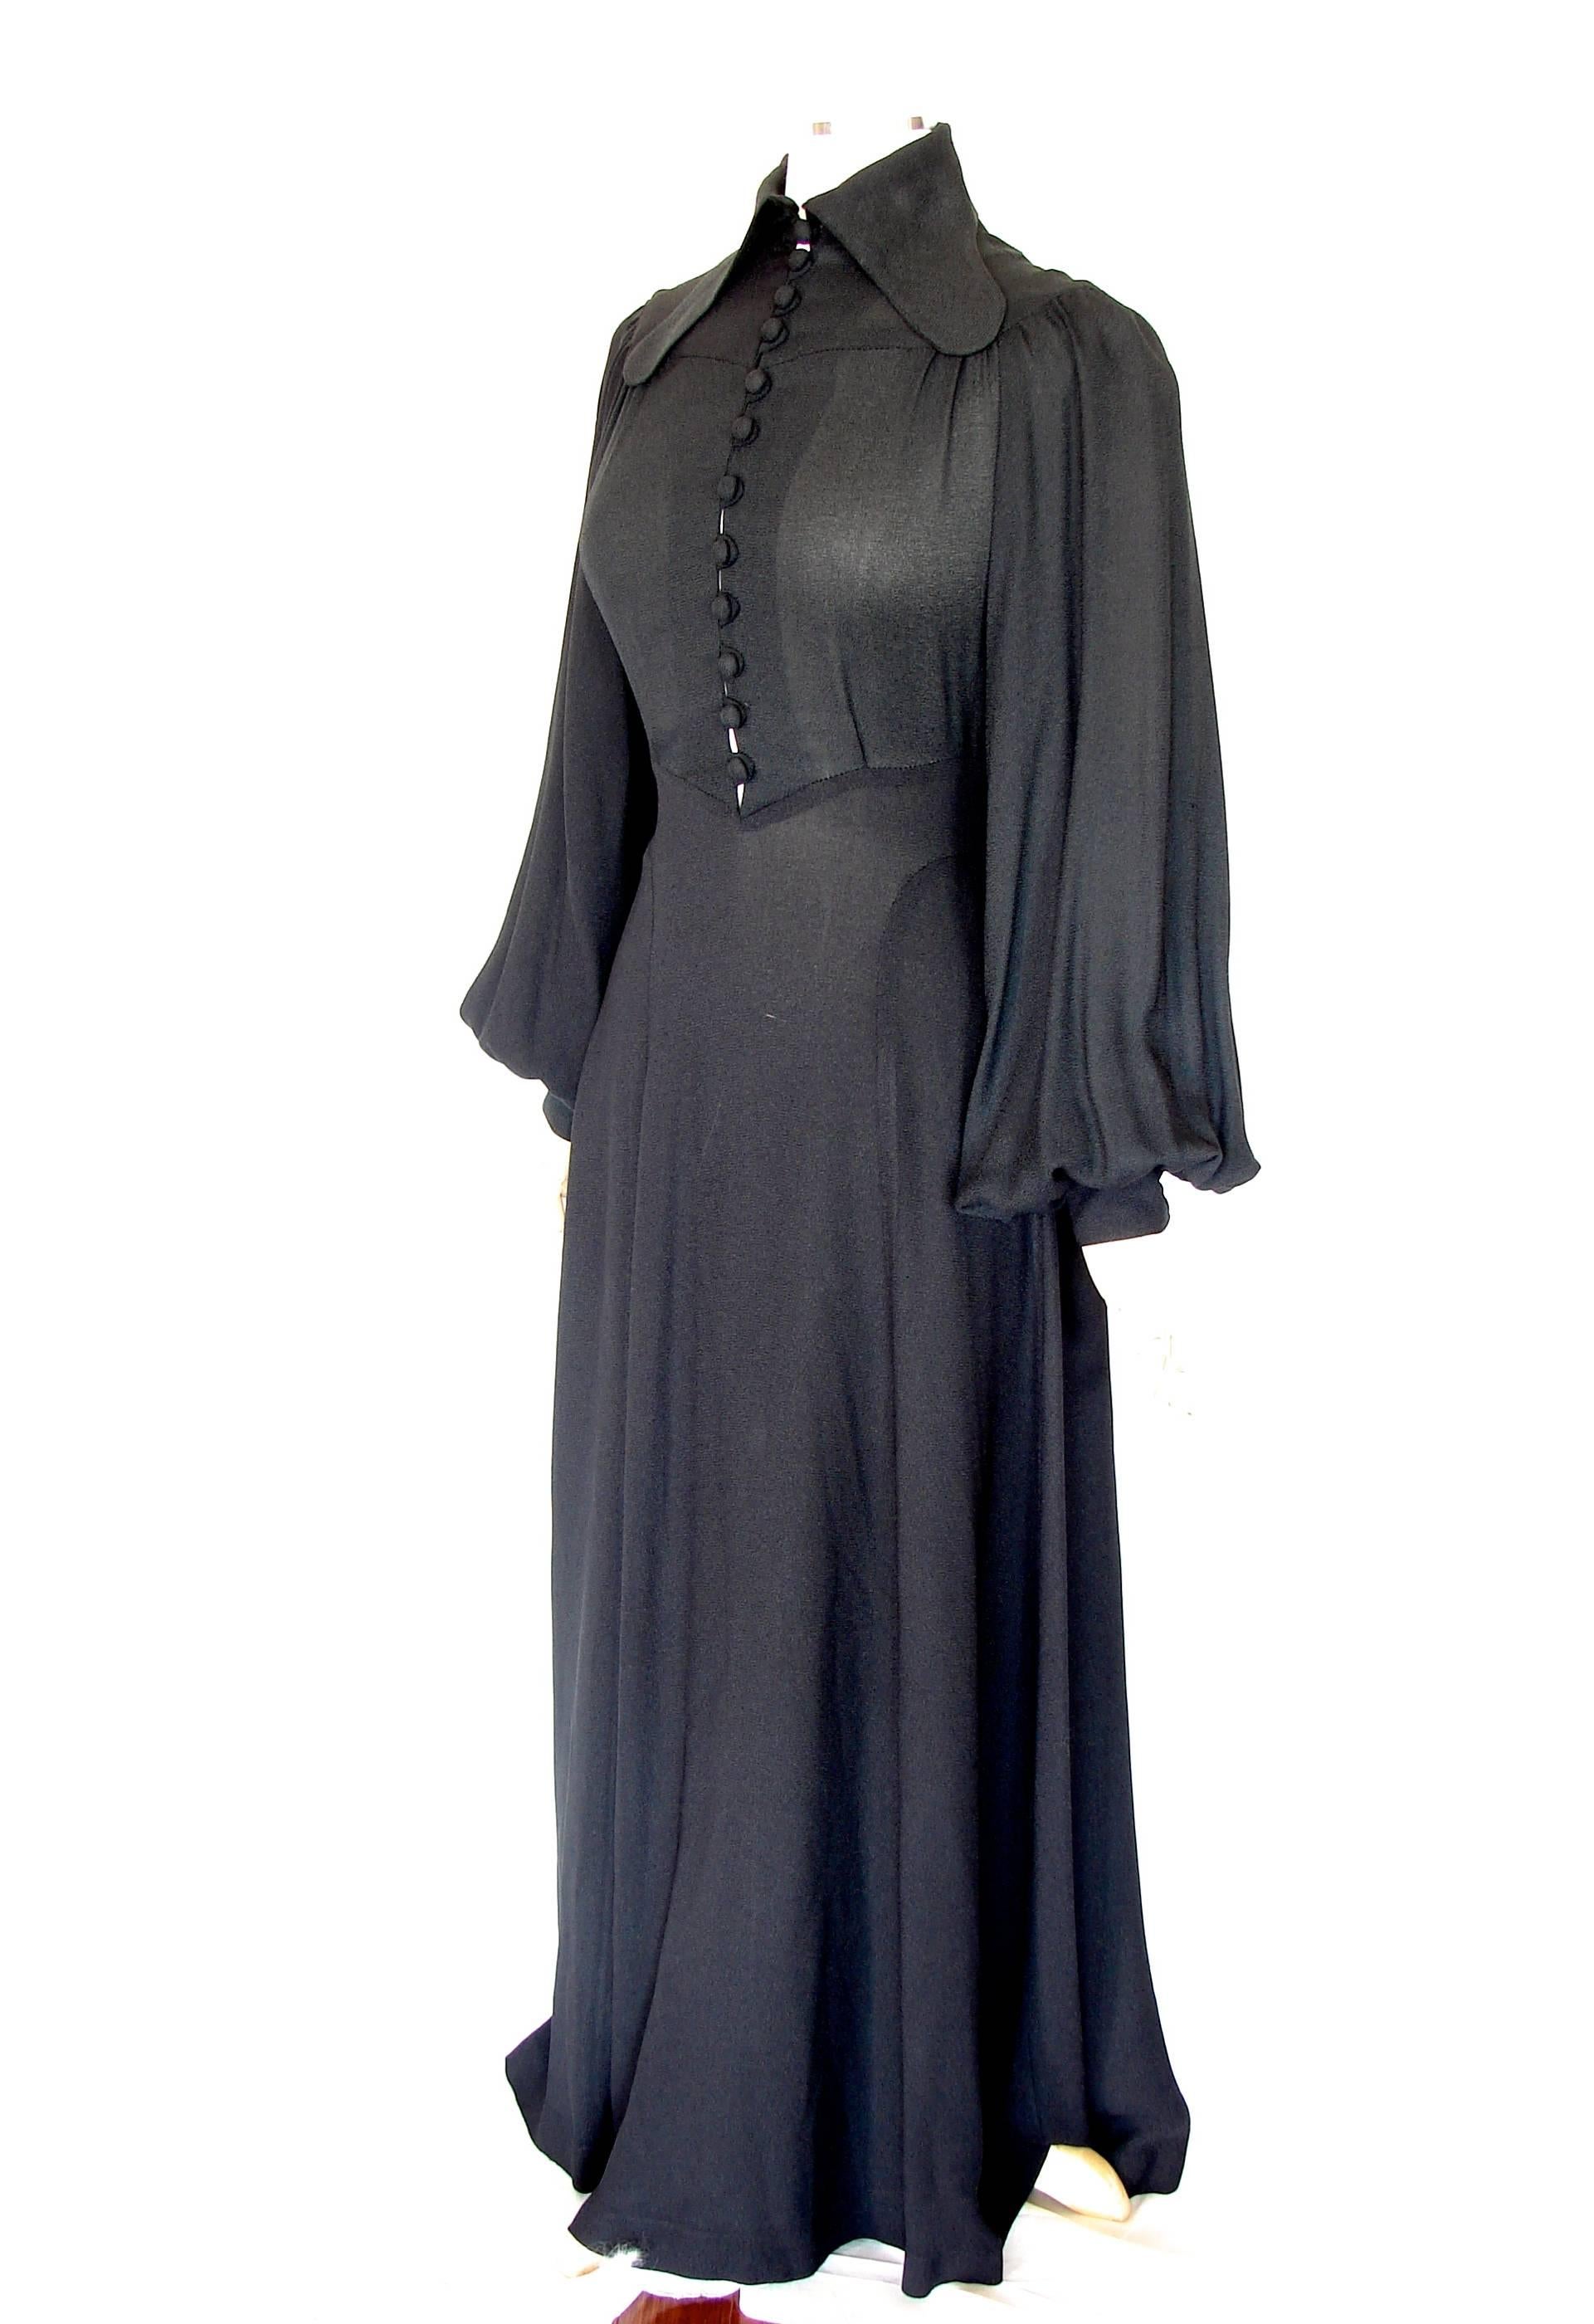 black dress with bishop sleeves